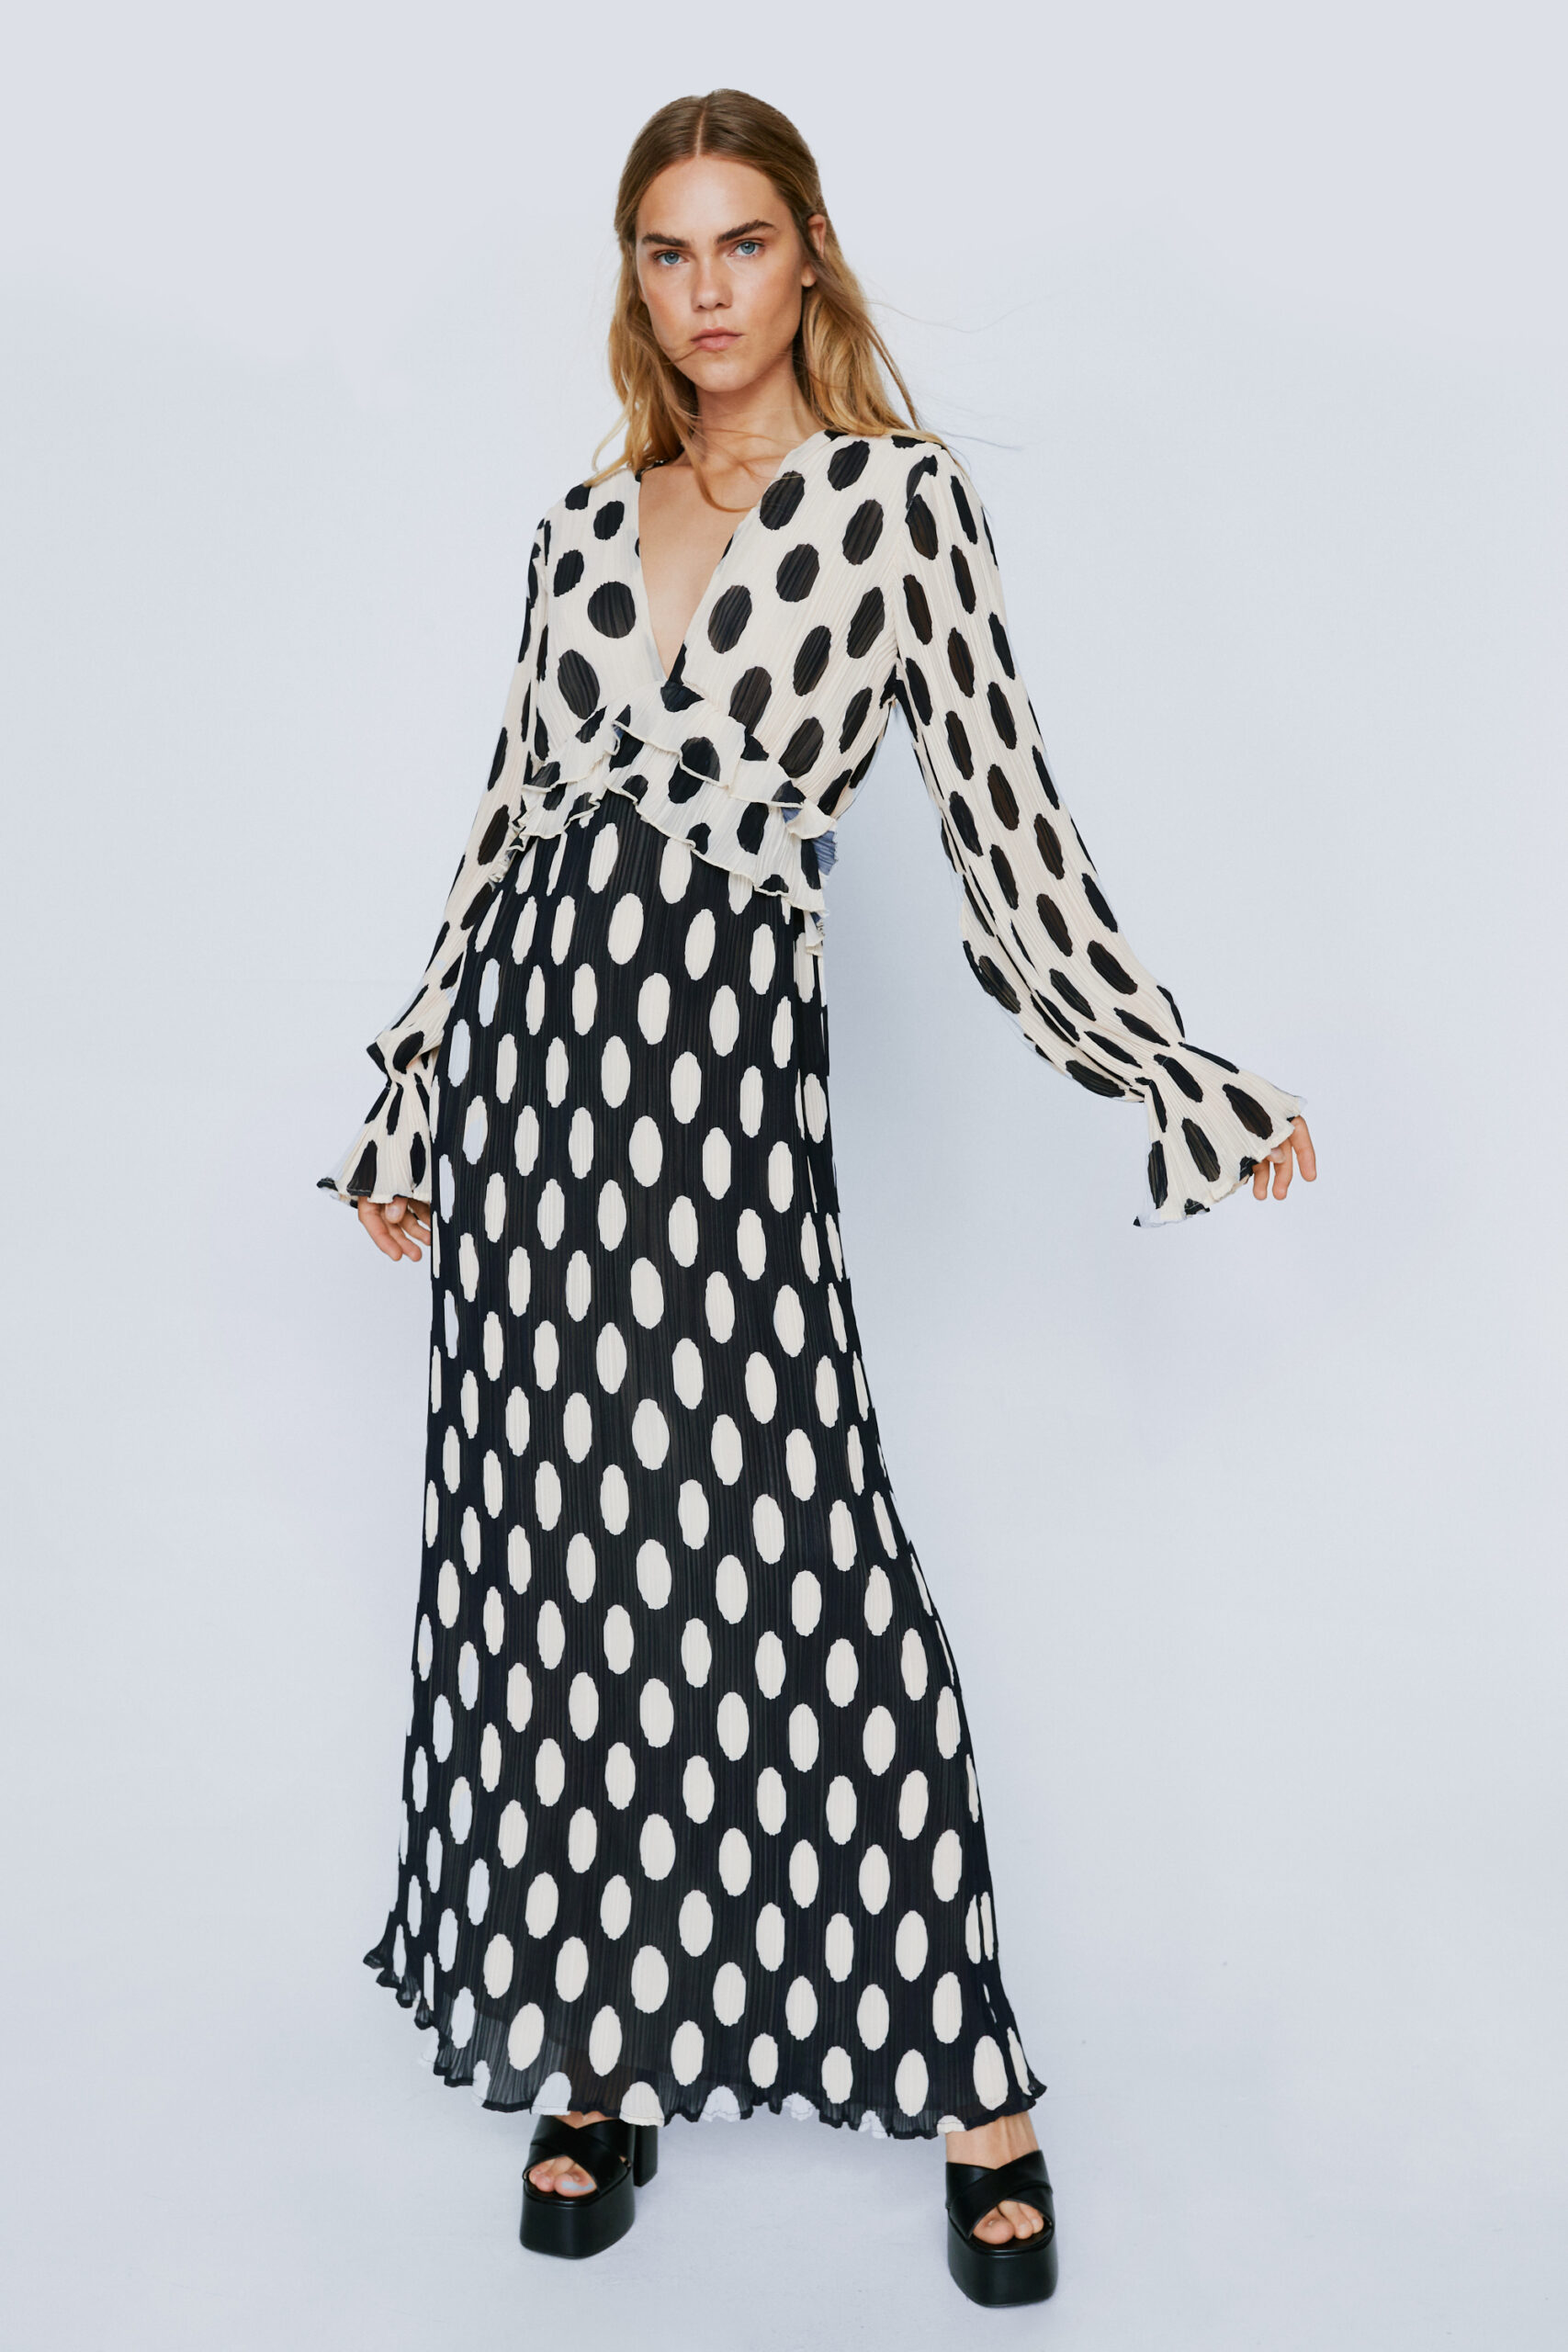 Polka Dot Print Pleated Maxi Dress